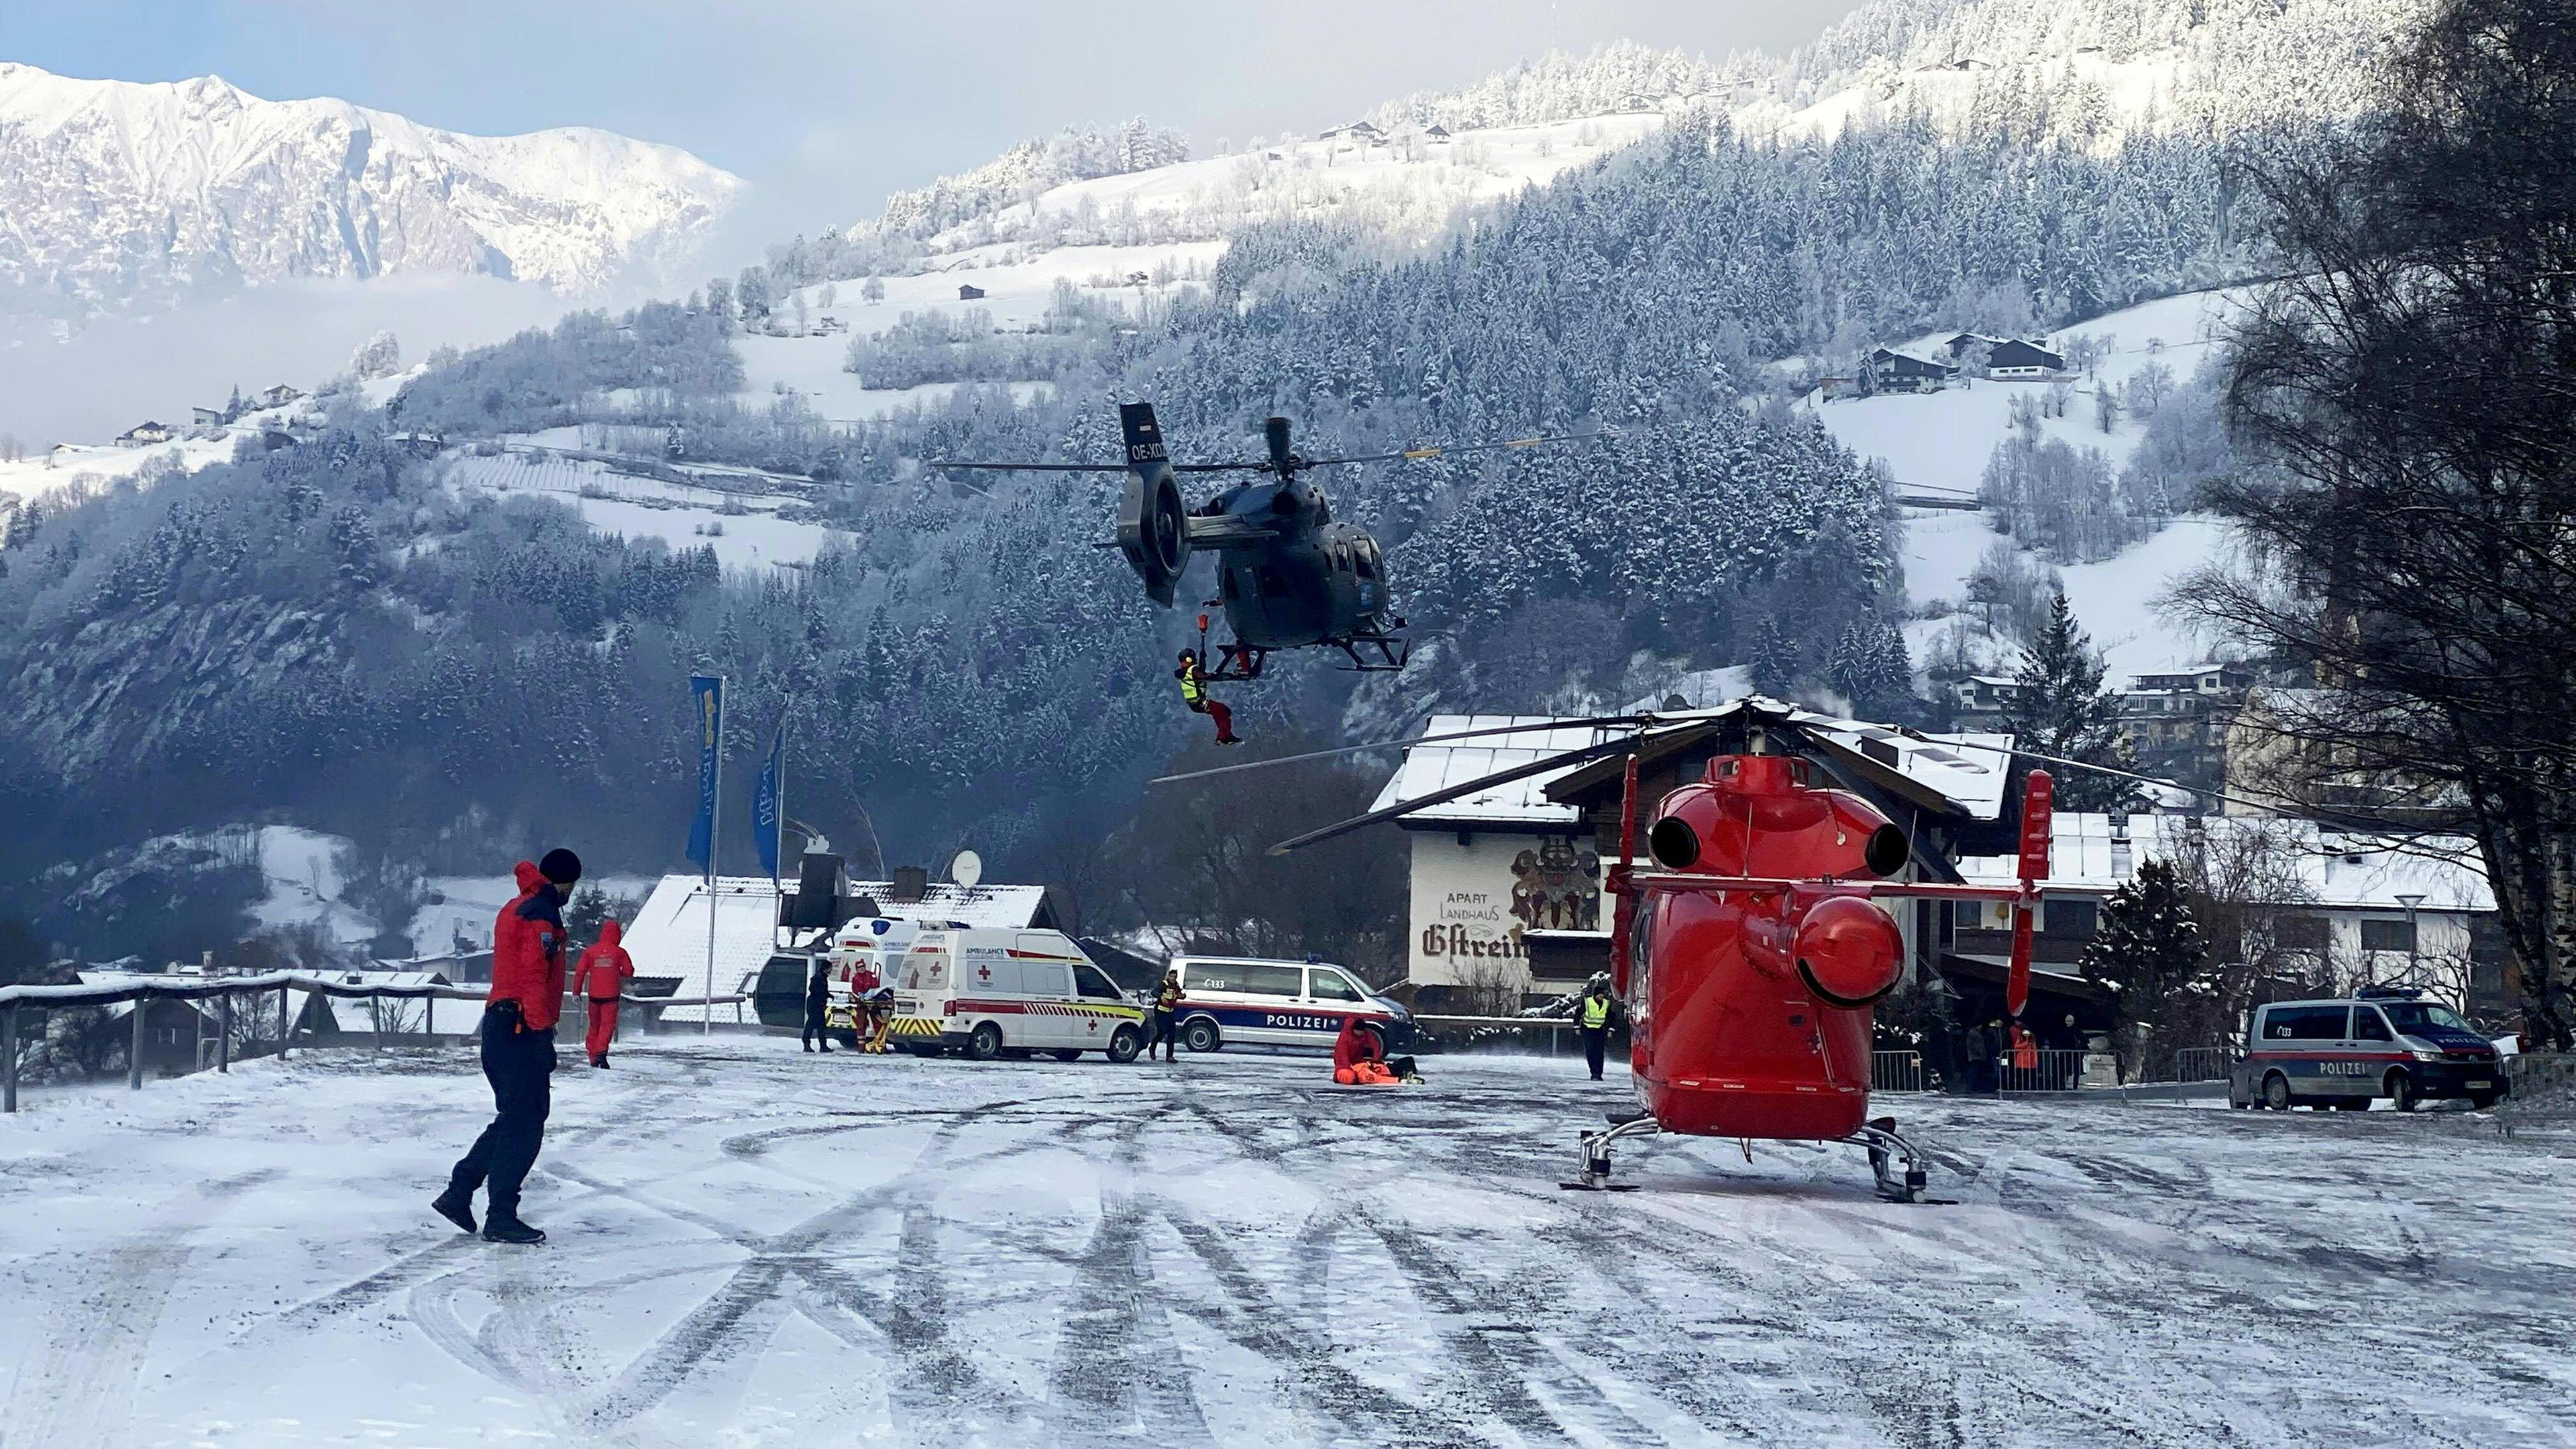 Österreich, Ötz: Einsatzkräfte sind beim Rettungseinsatz zu sehen. Beim Absturz einer Gondel im österreichischen Ötz sind am Dienstag nach ersten Angaben der Polizei mehrere Menschen schwer verletzt worden.